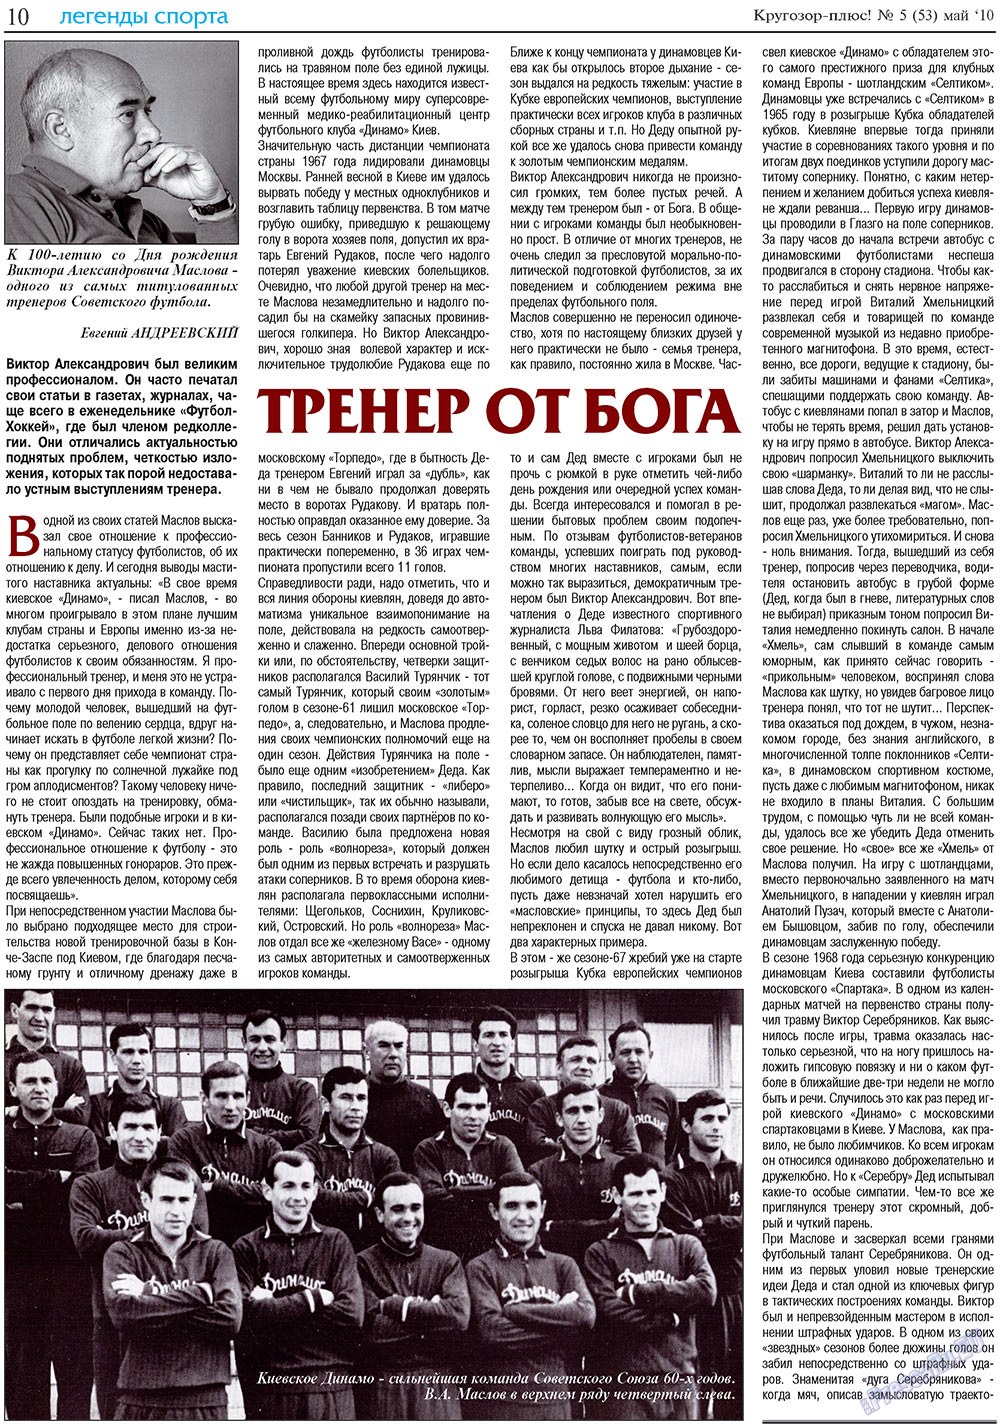 Кругозор плюс!, газета. 2010 №5 стр.26